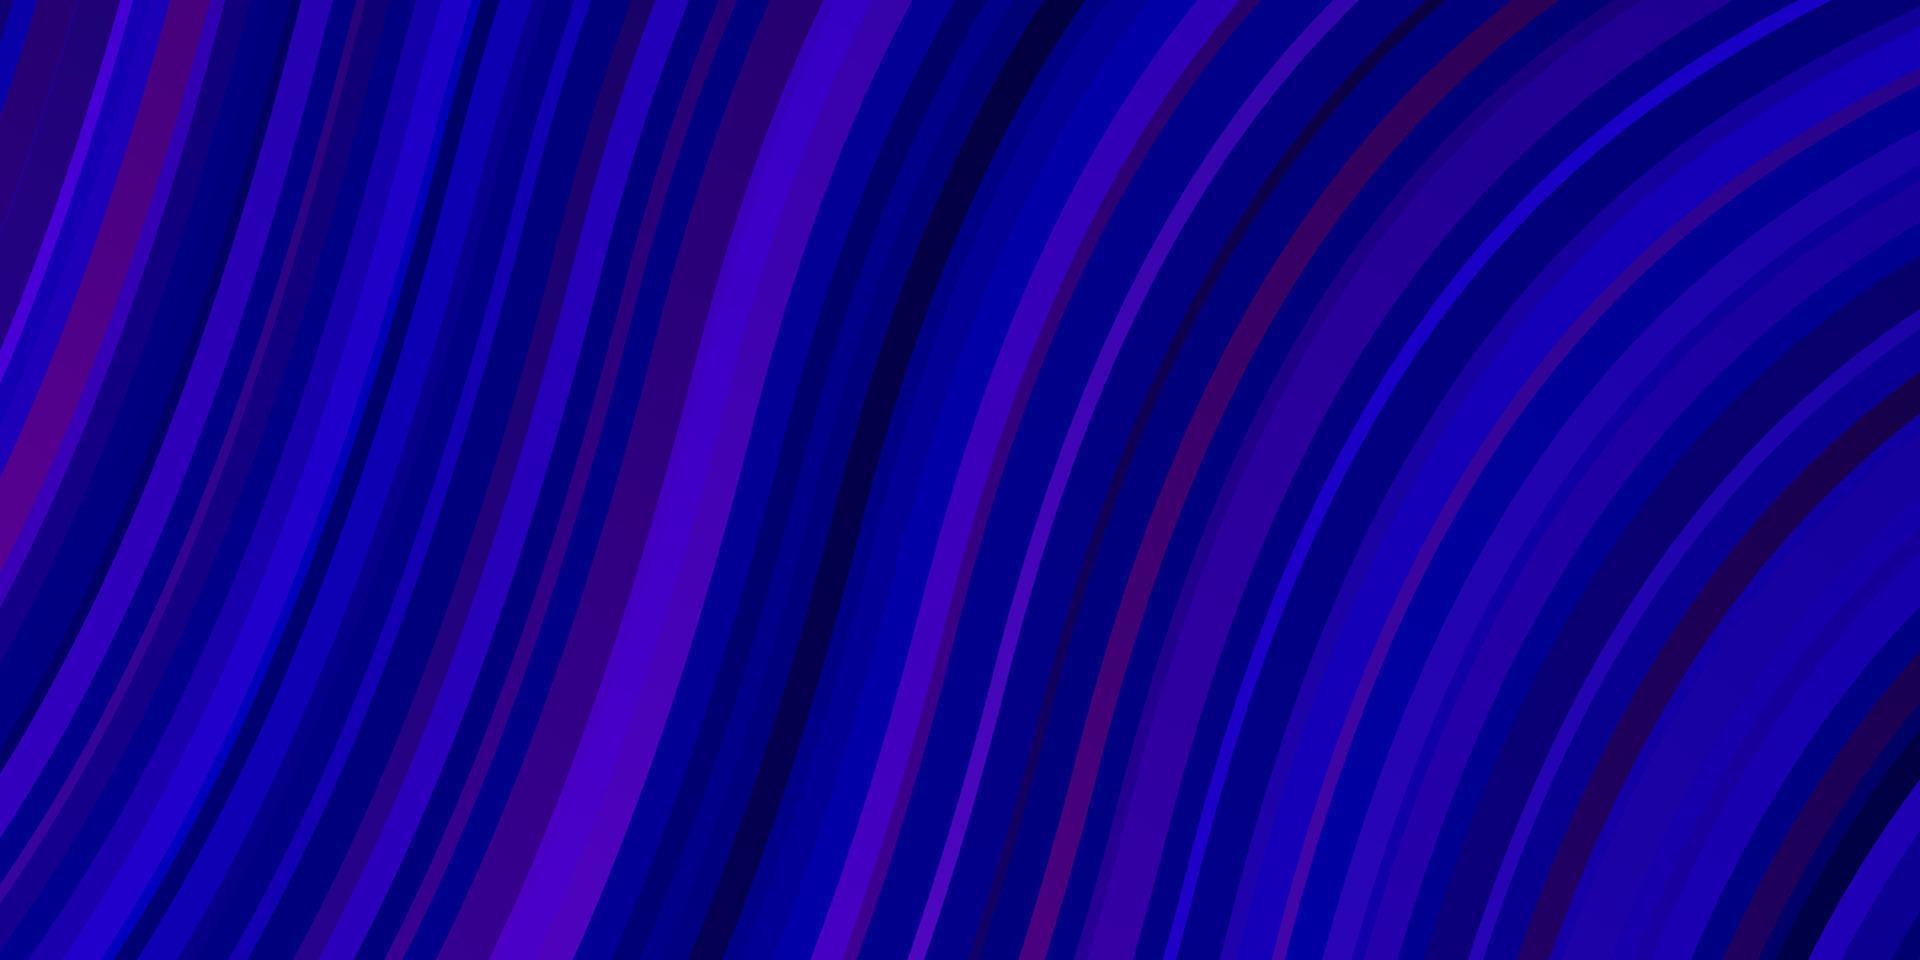 Fondo de vector de color rosa oscuro, azul con líneas torcidas.